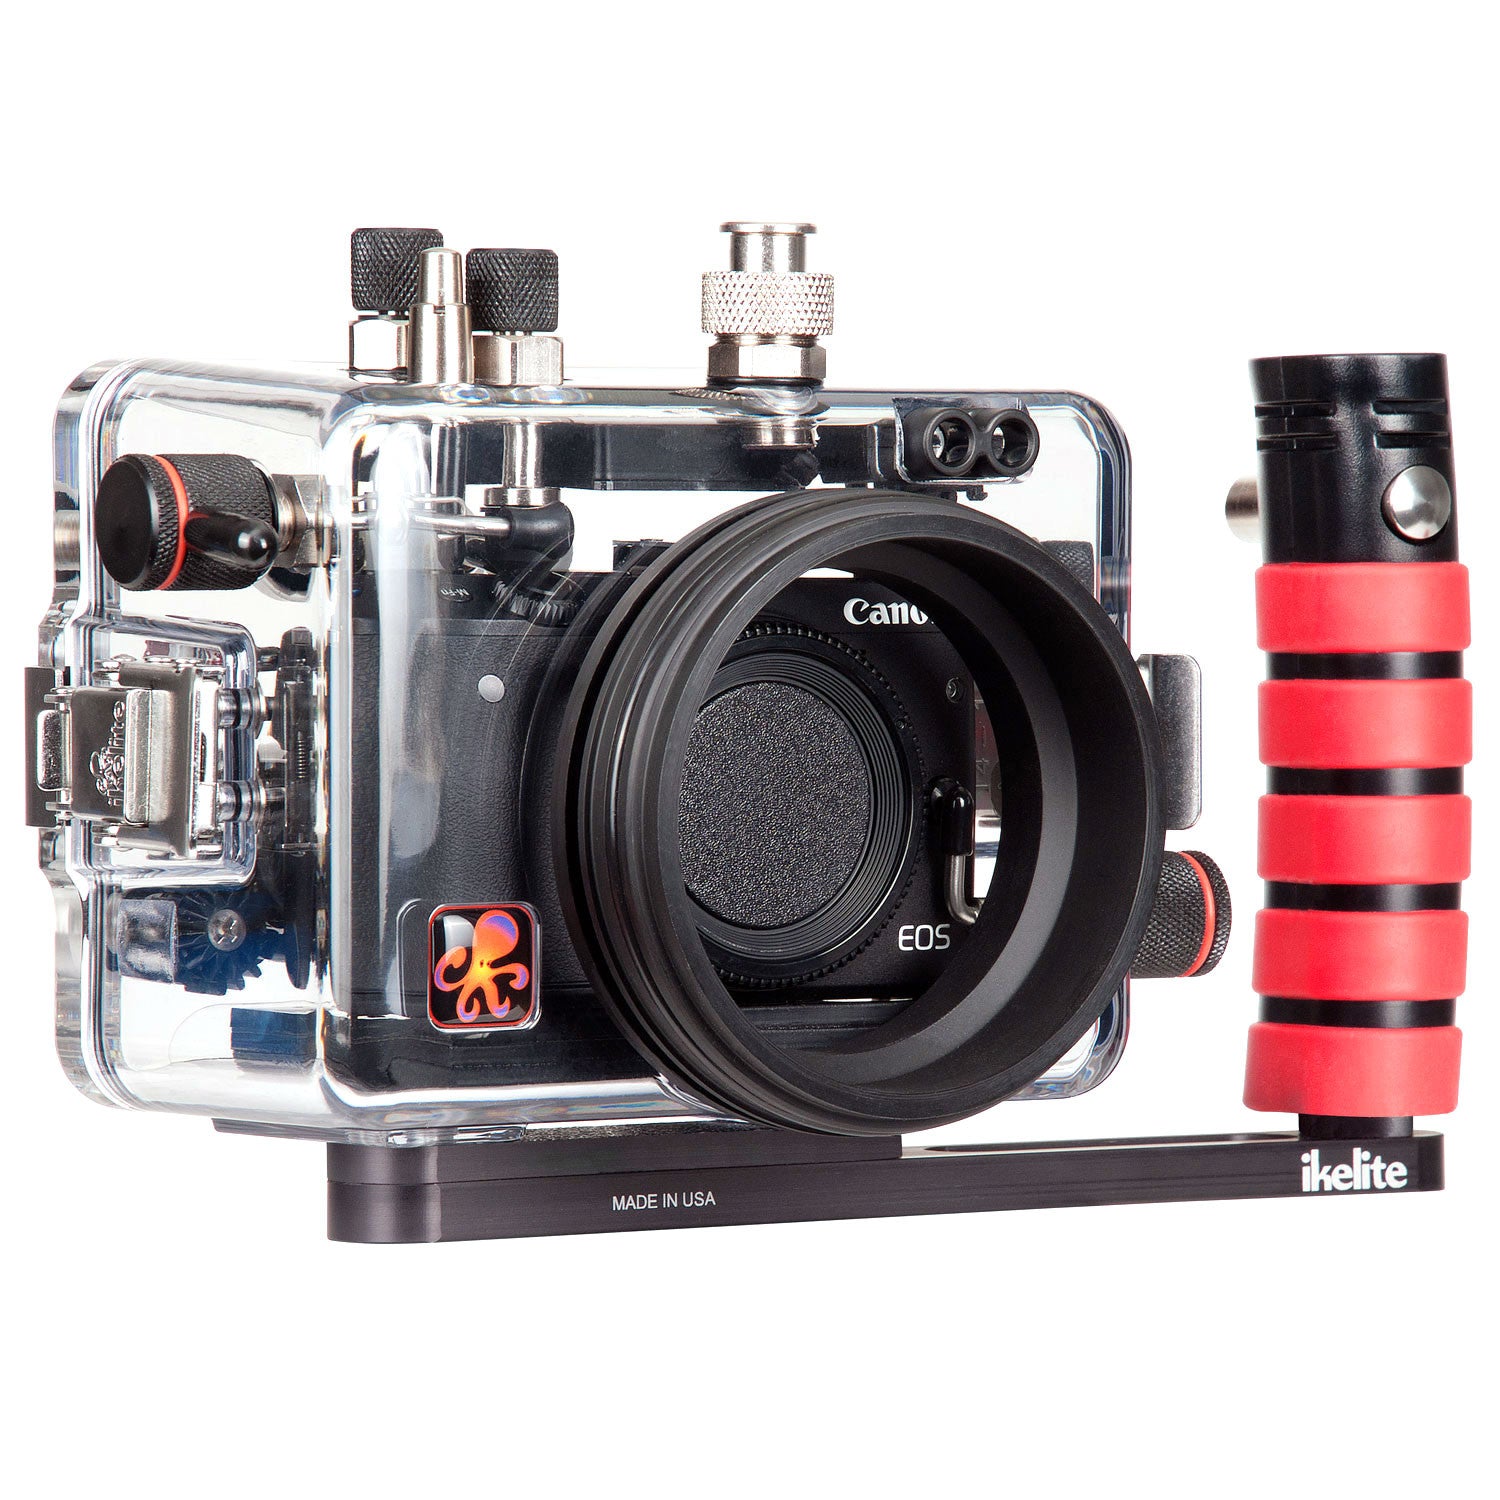 200DLM/A Underwater TTL Housing for Canon EOS M3 Mirrorless Cameras